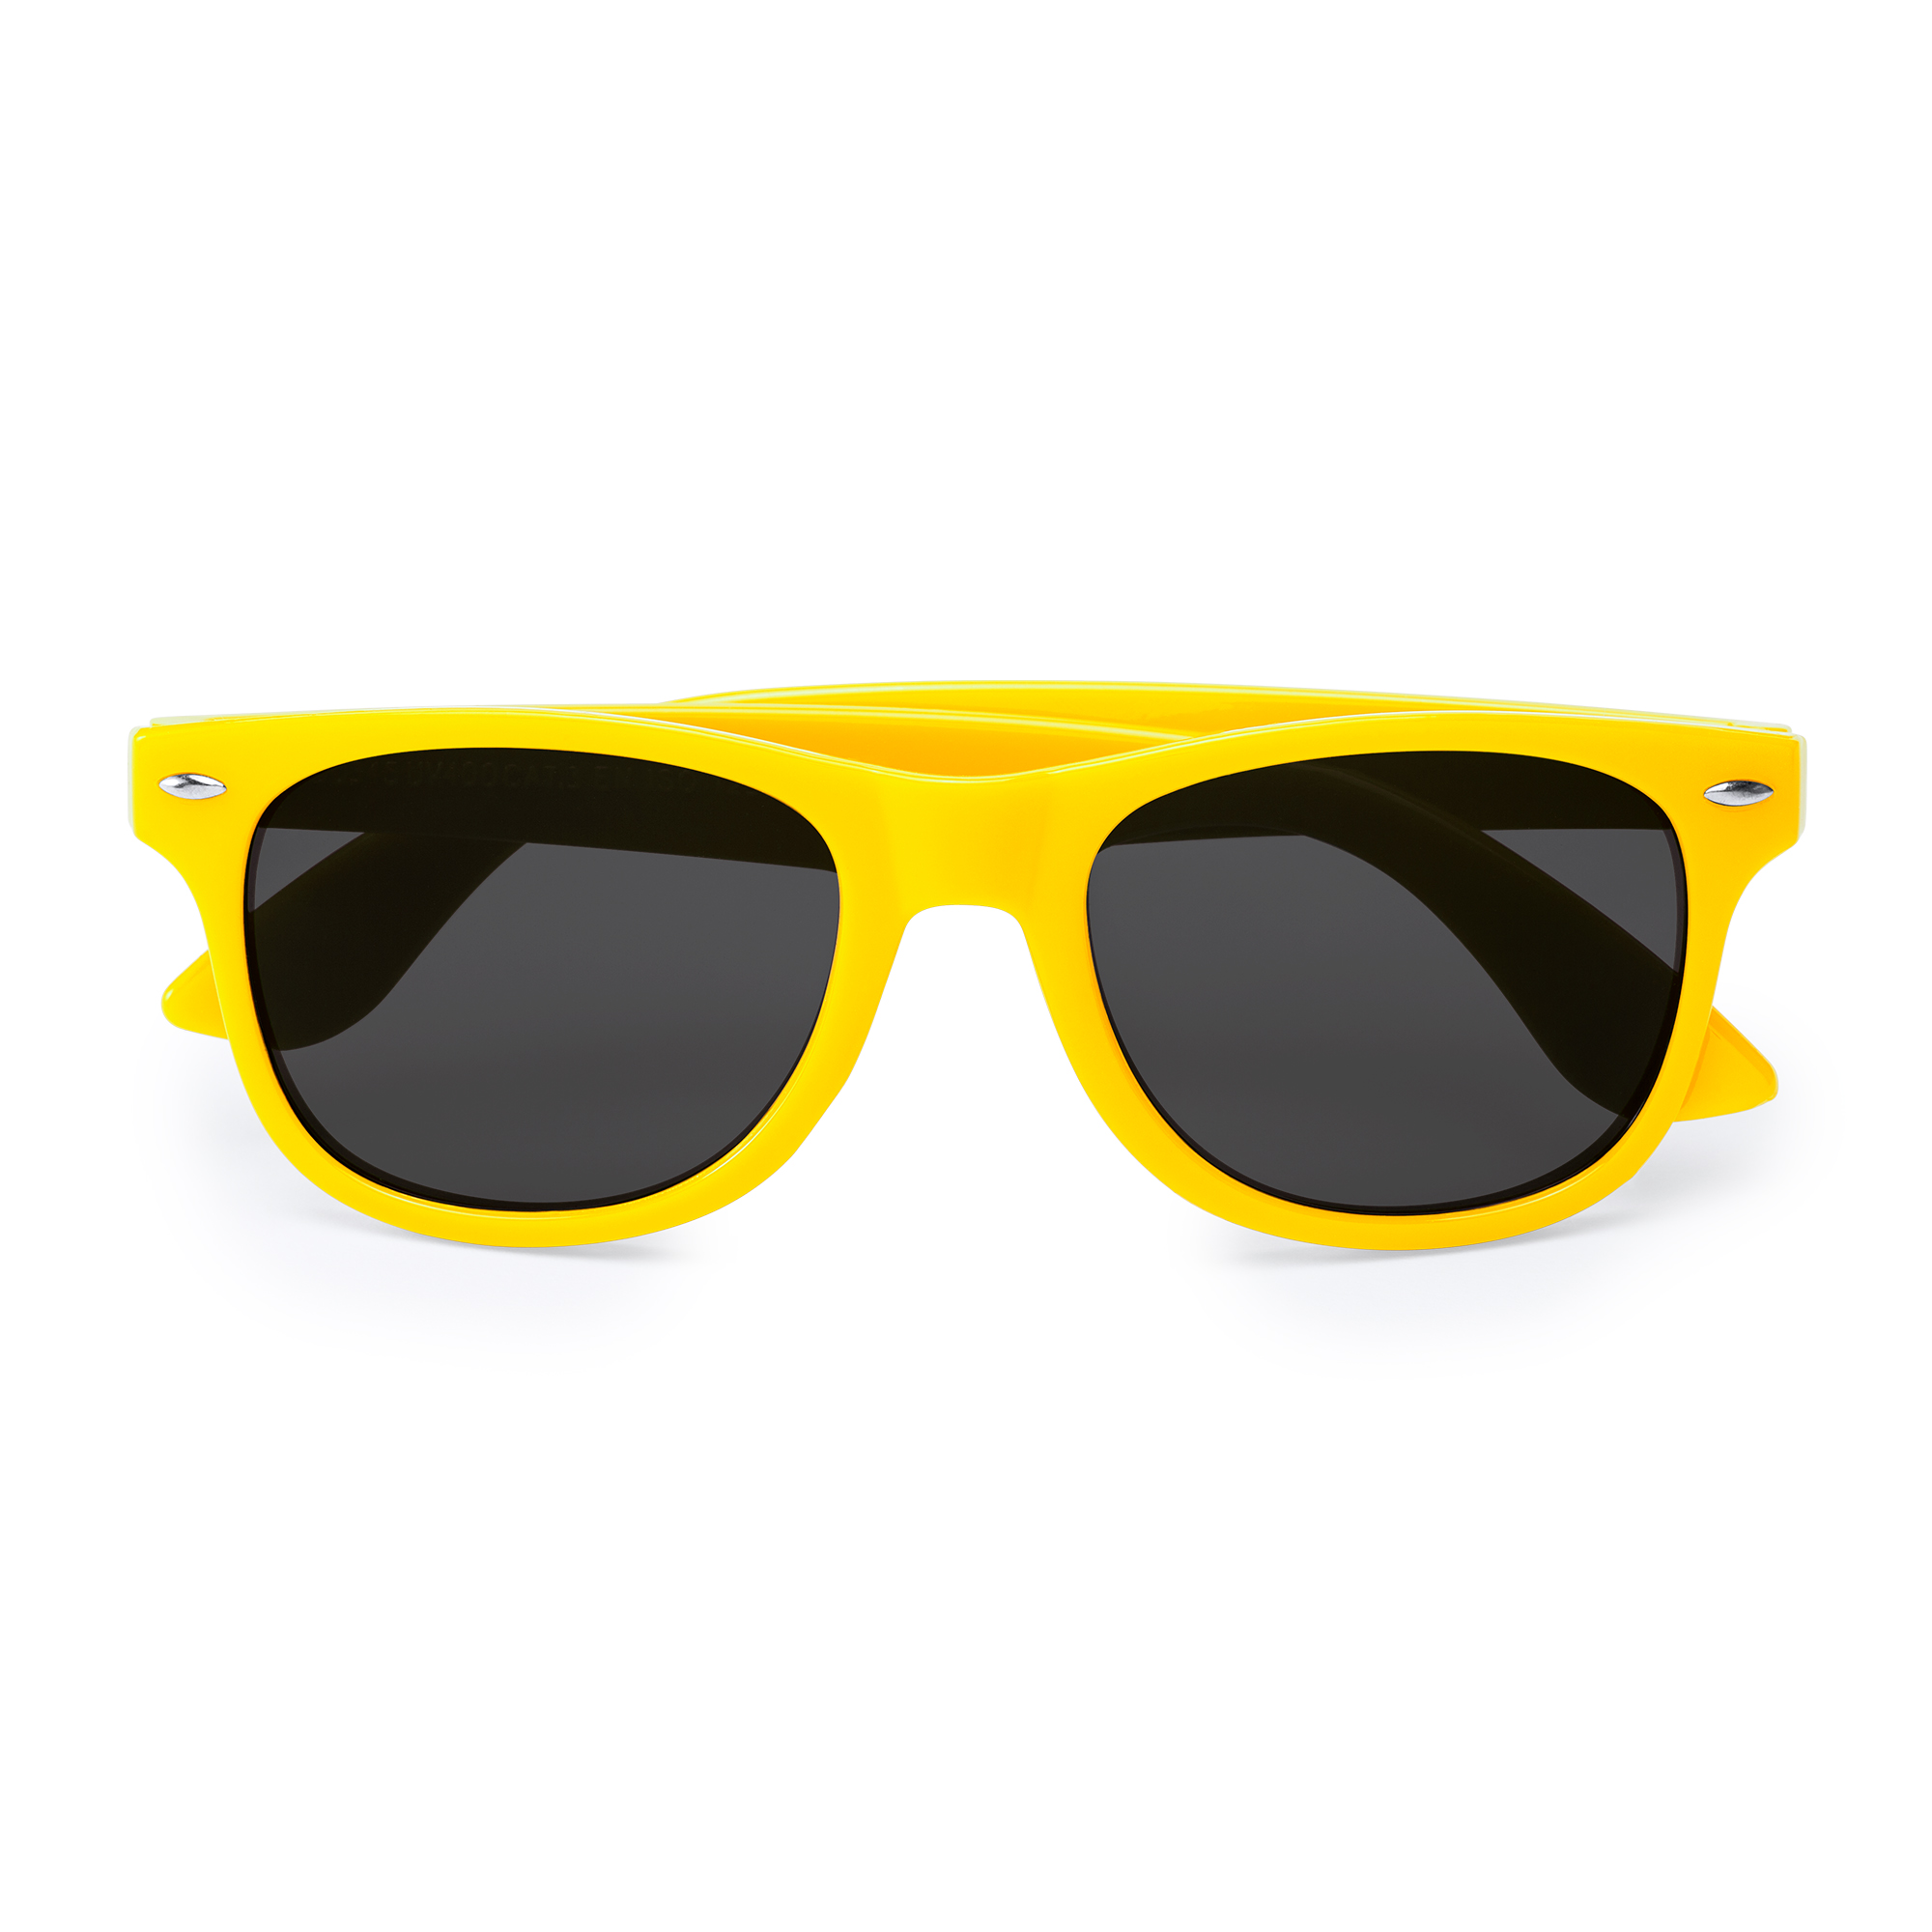 6012-sun-occhiali-da-sole-protezione-uv400-giallo.jpg